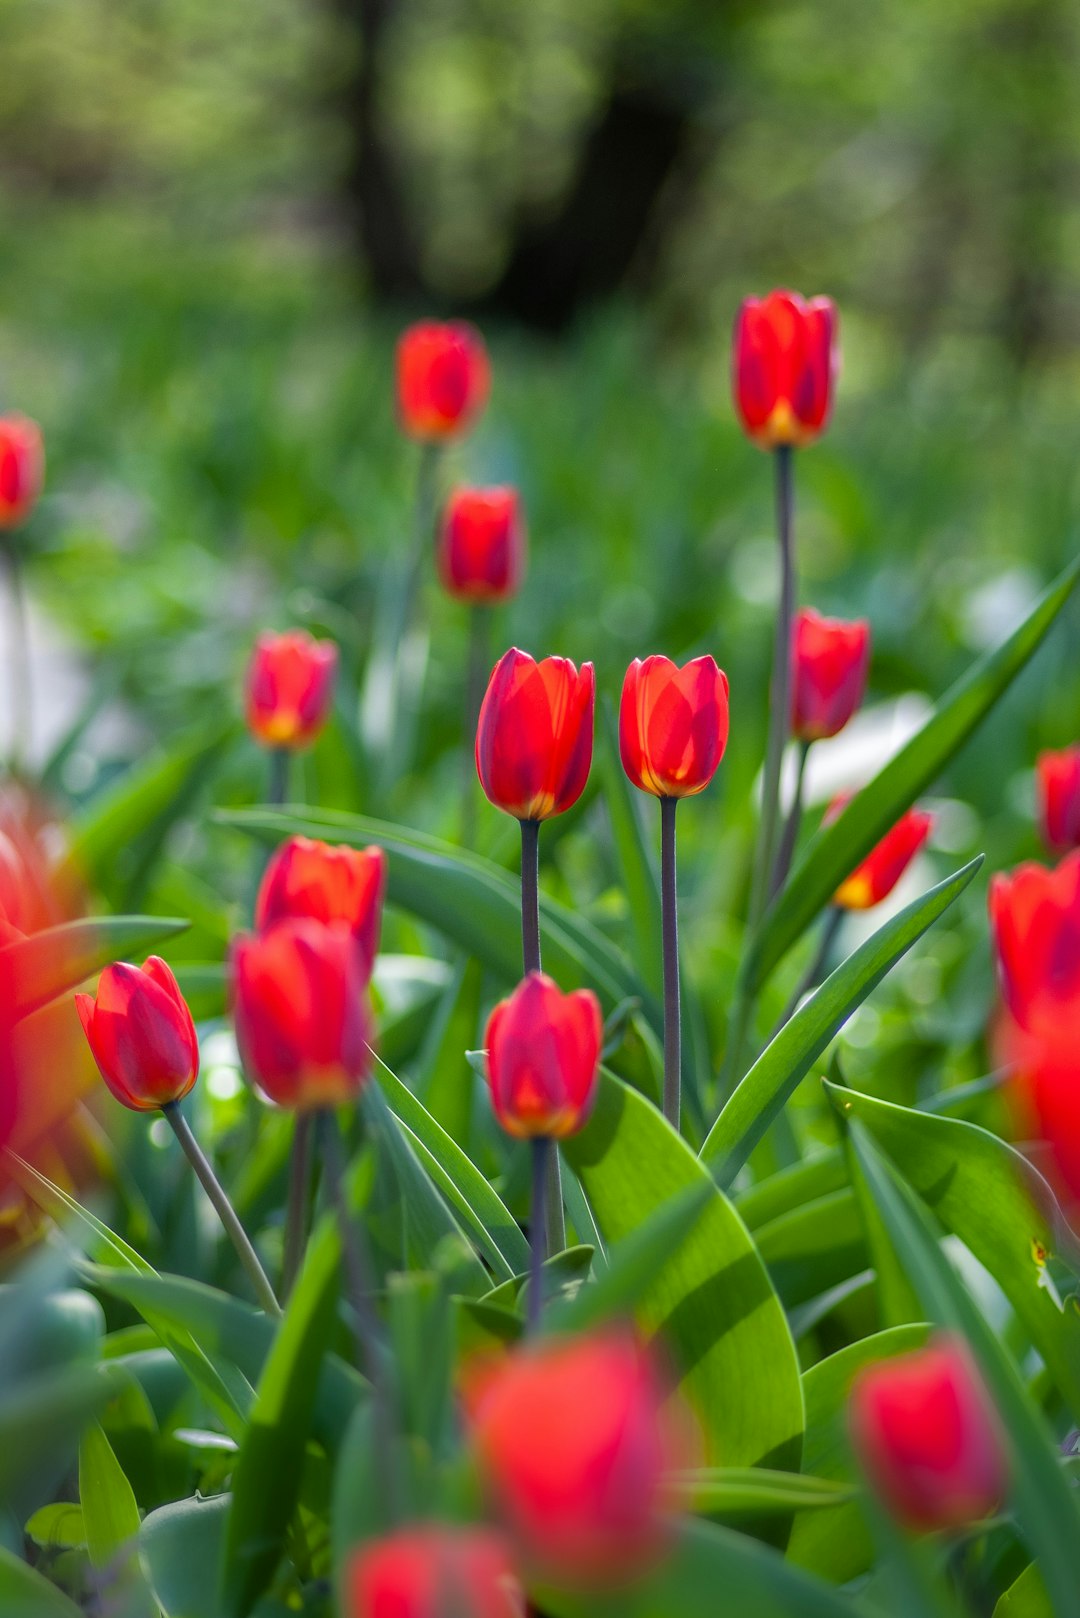 blooming red tulips in garden